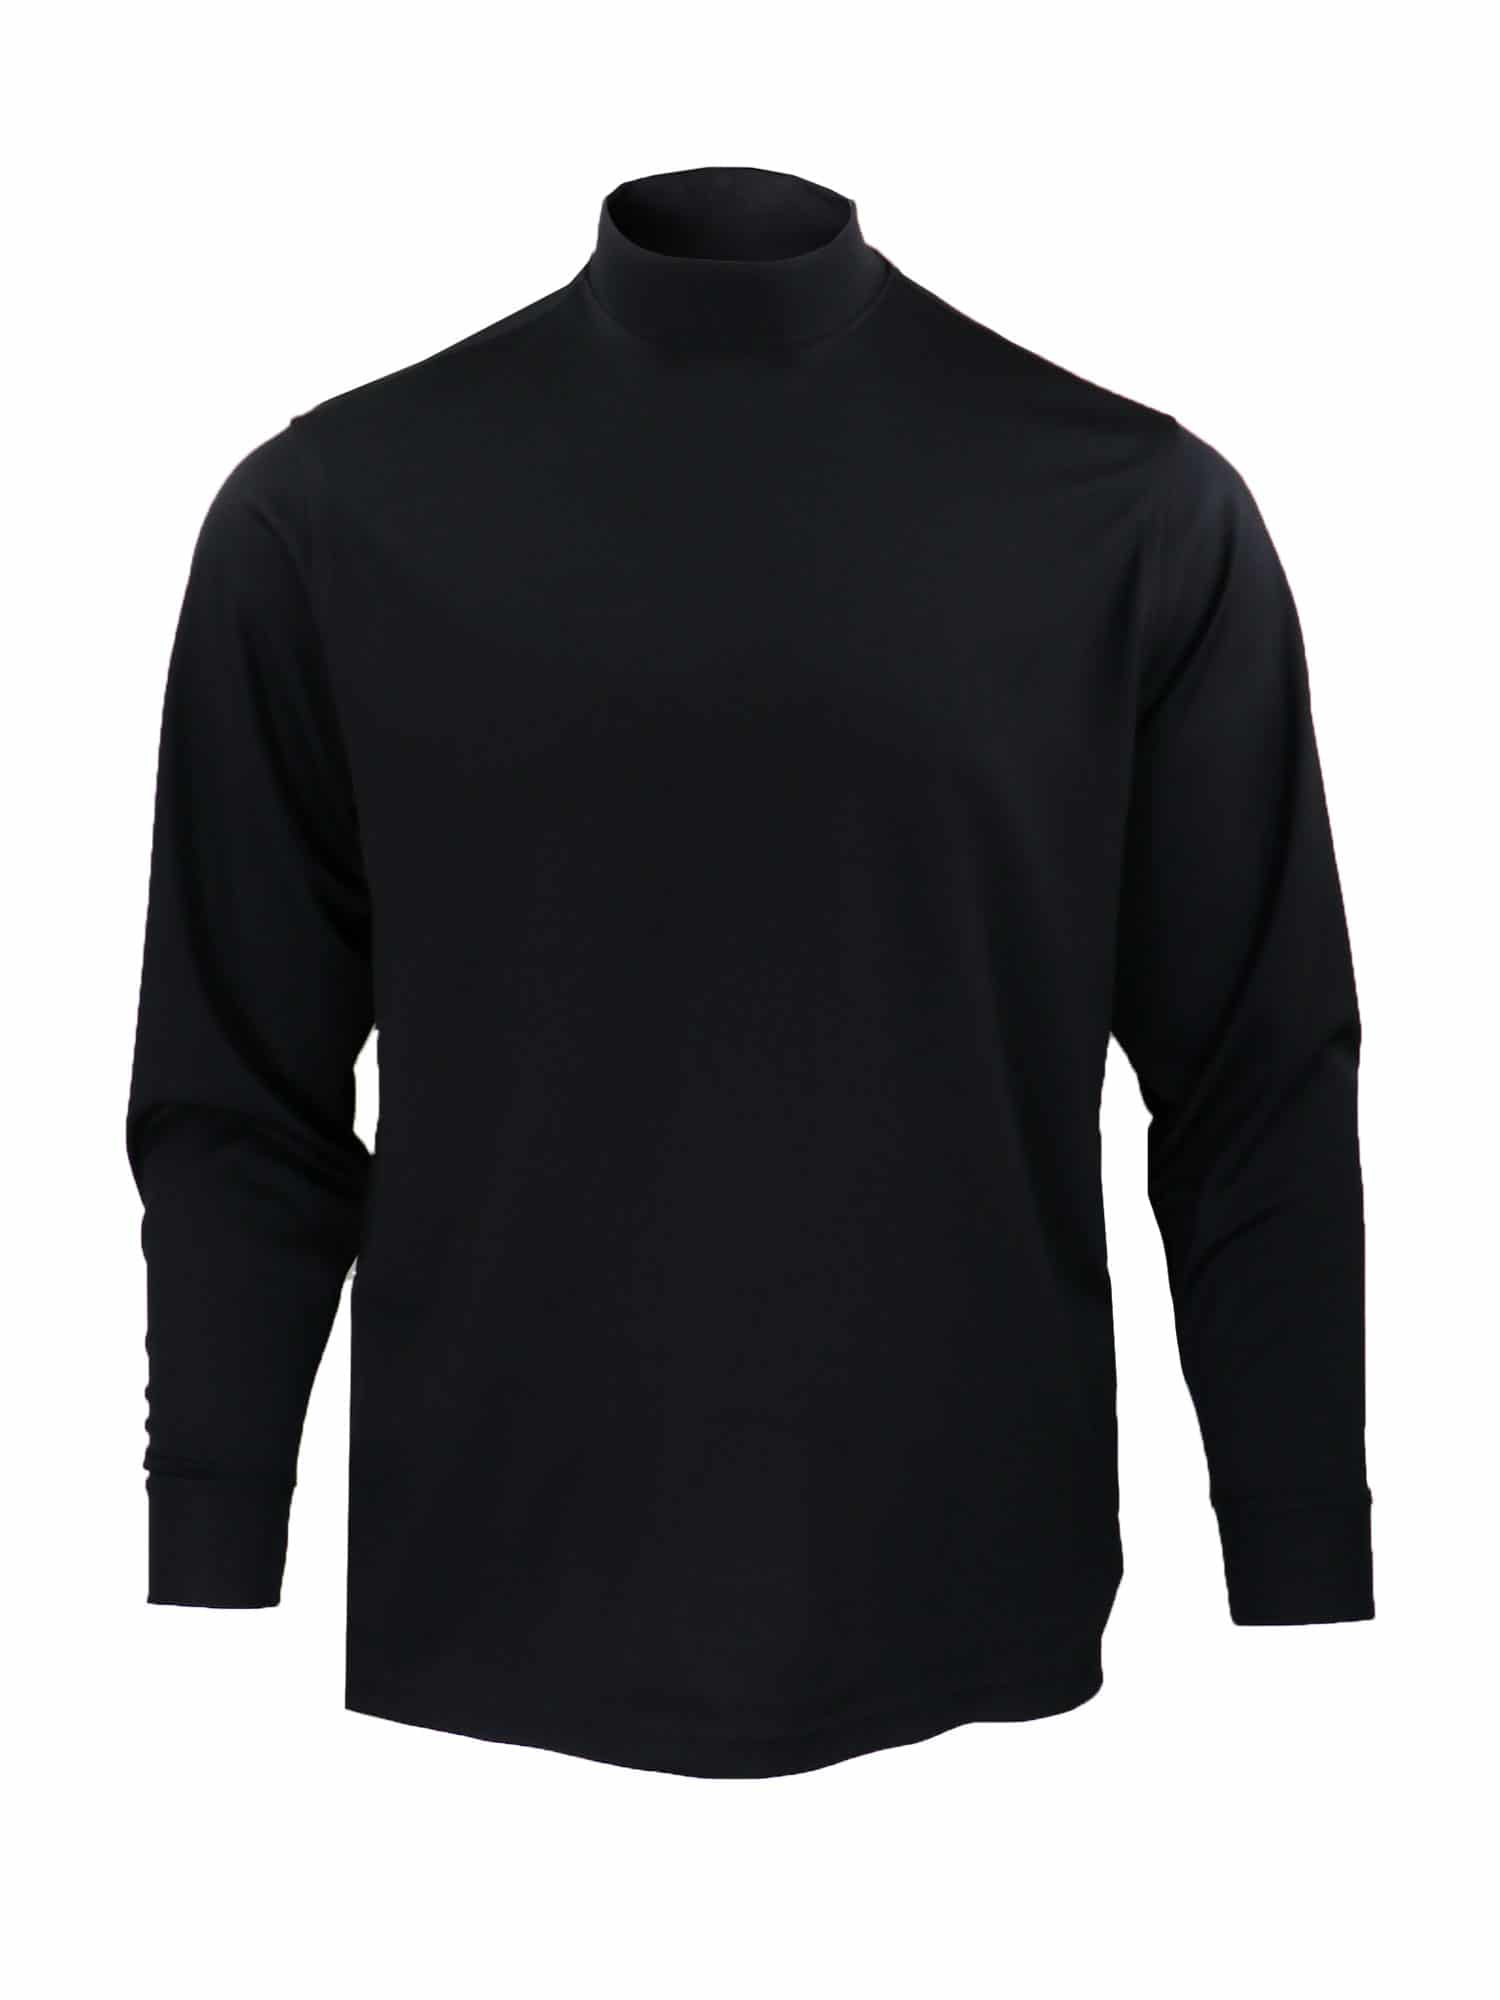 Download Long Sleeve Mock Neck Jersey - Black - Donald Ross Sportswear